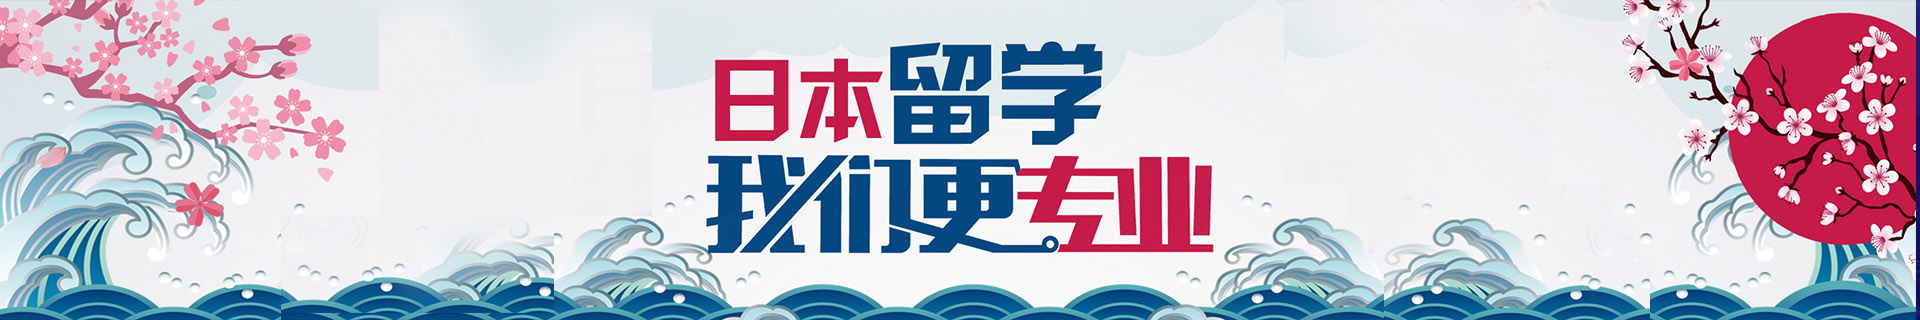 北京海淀樱花国际日语培训机构